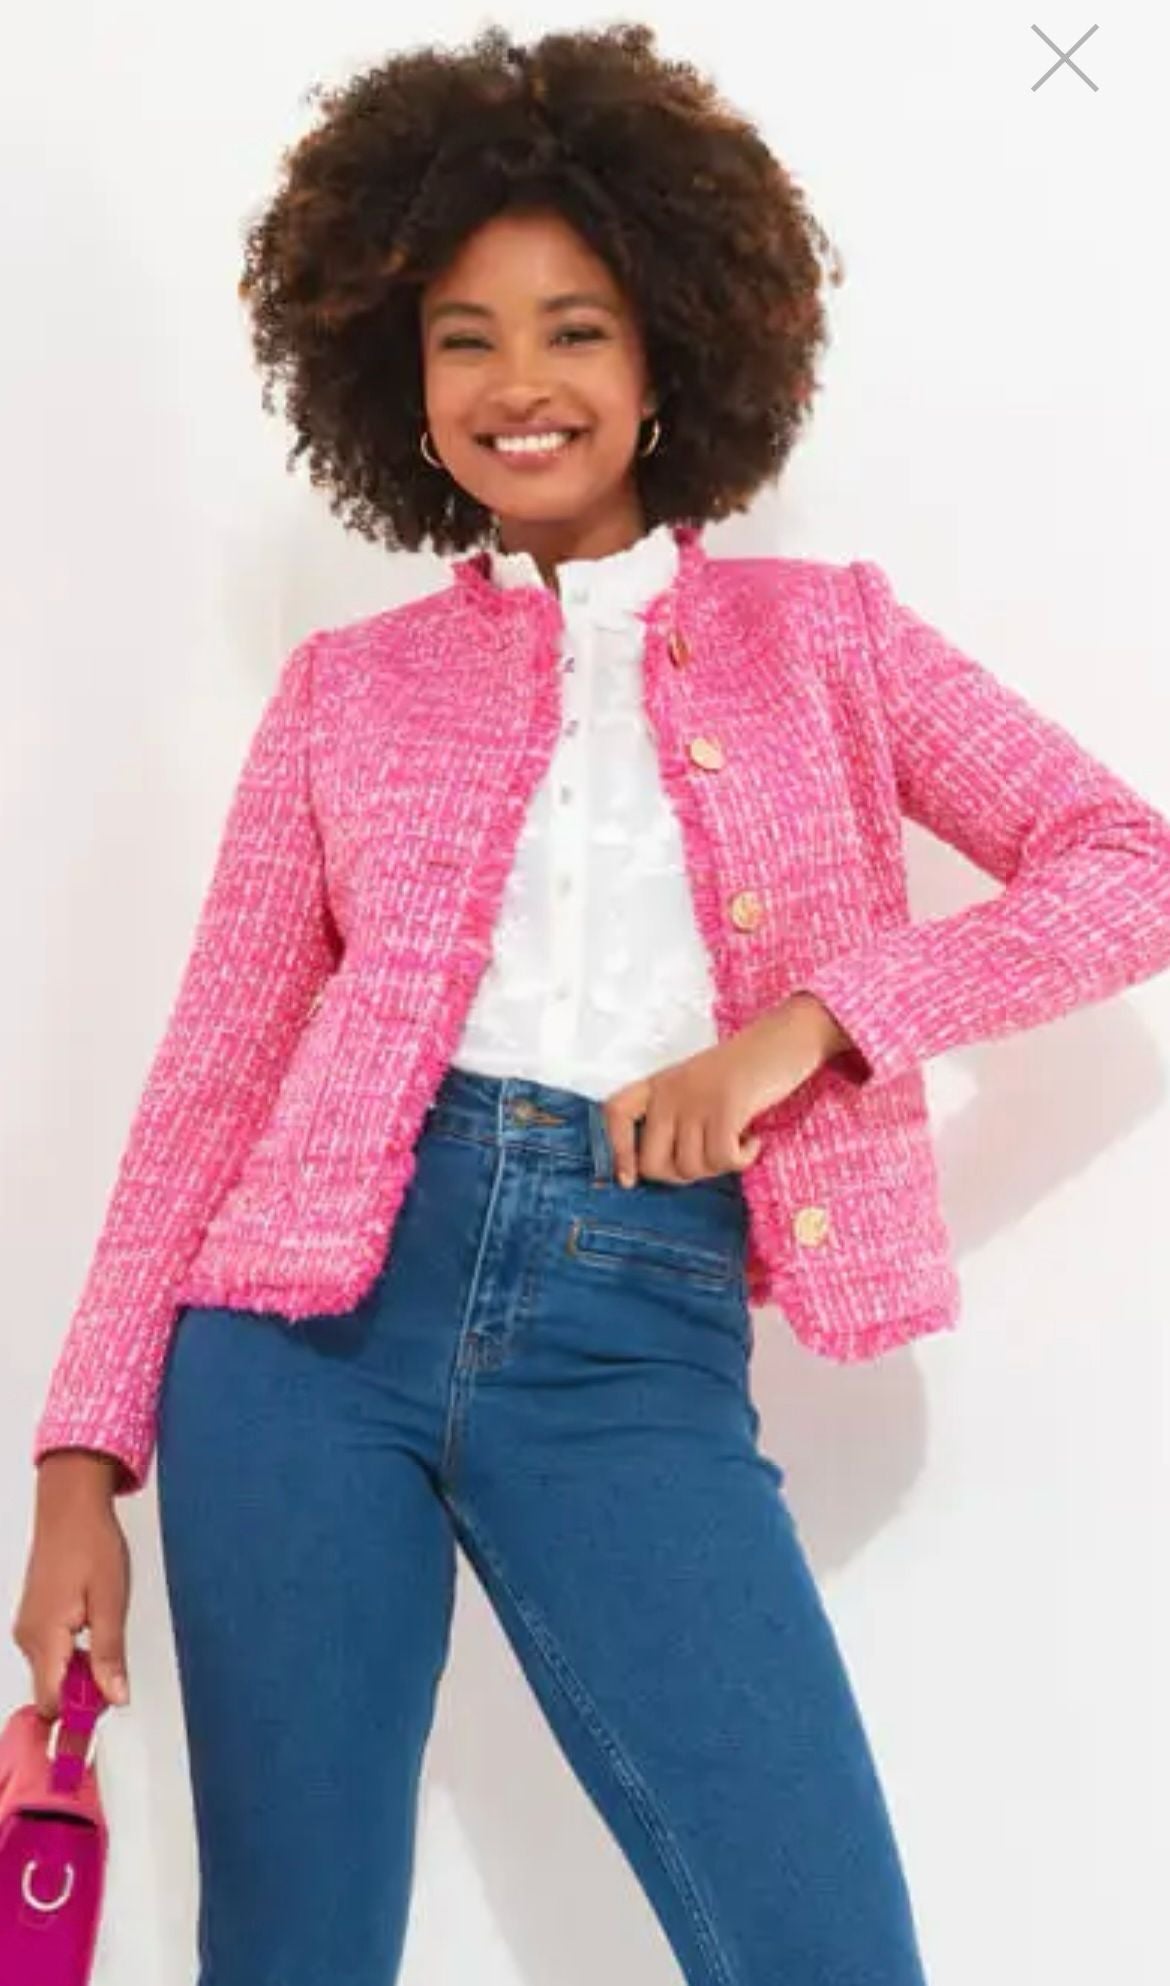 Rose Button Pink Jacket